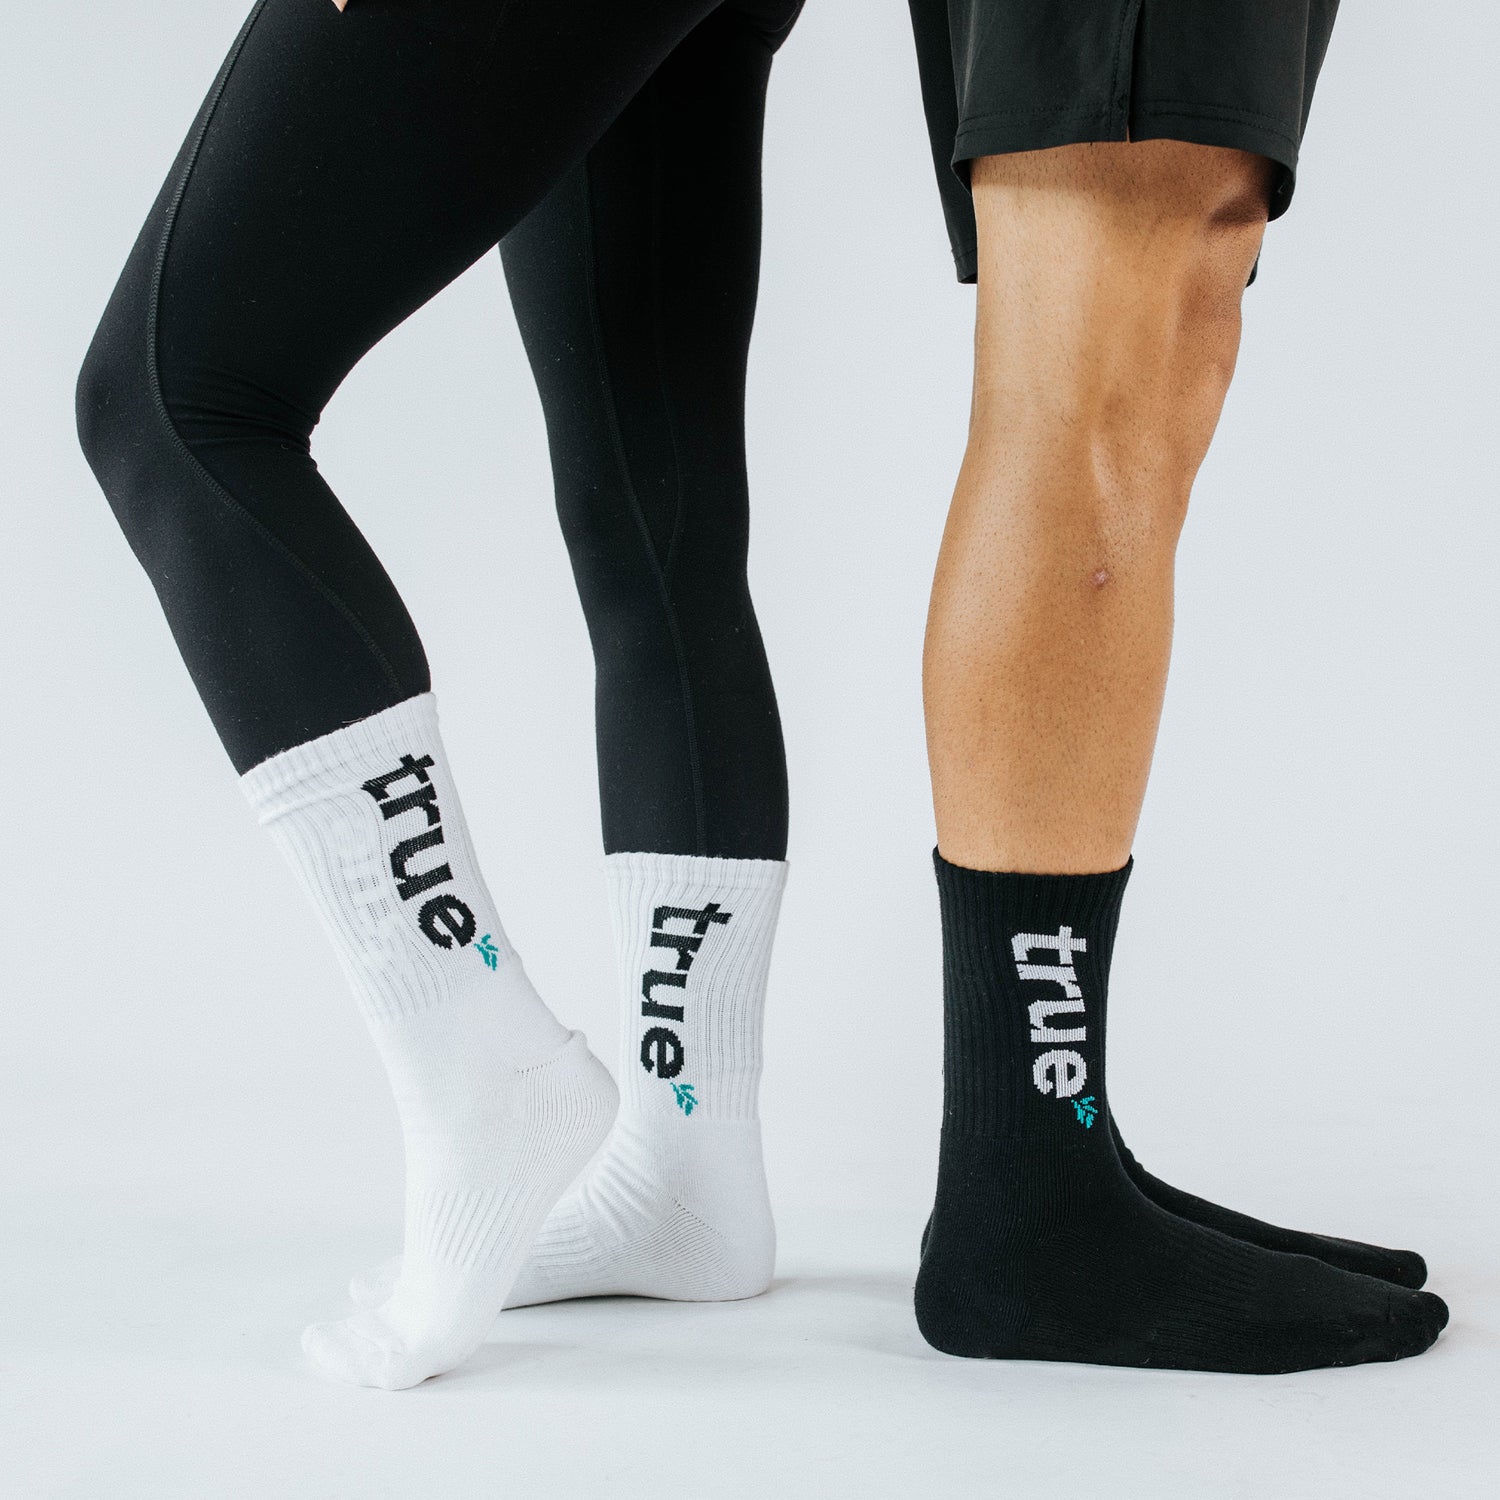 True Socks - Black & White Fitness Workout Socks